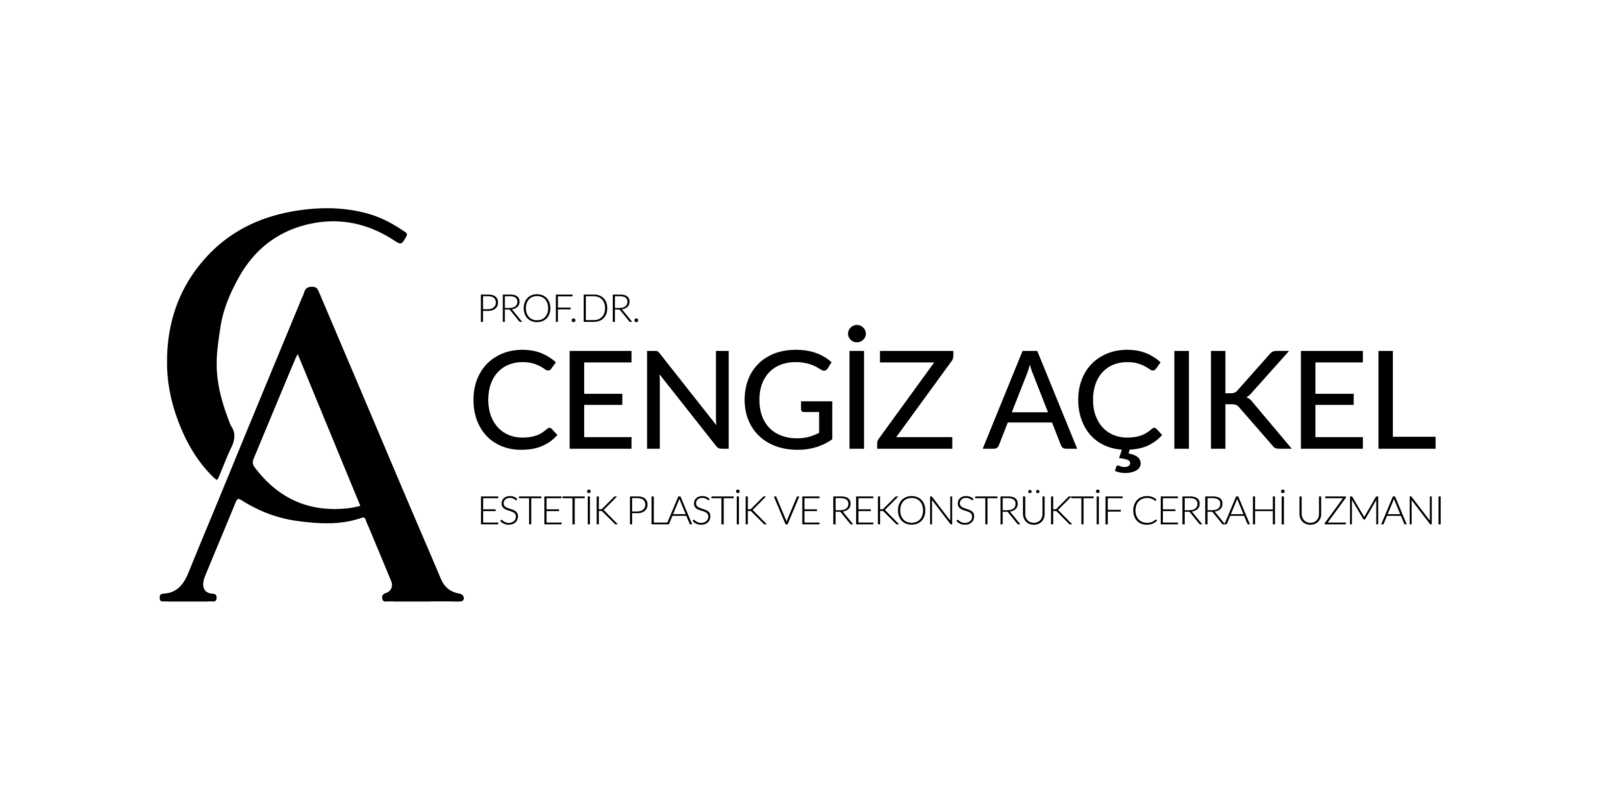 Prof. Dr. Cengiz AÇIKEL